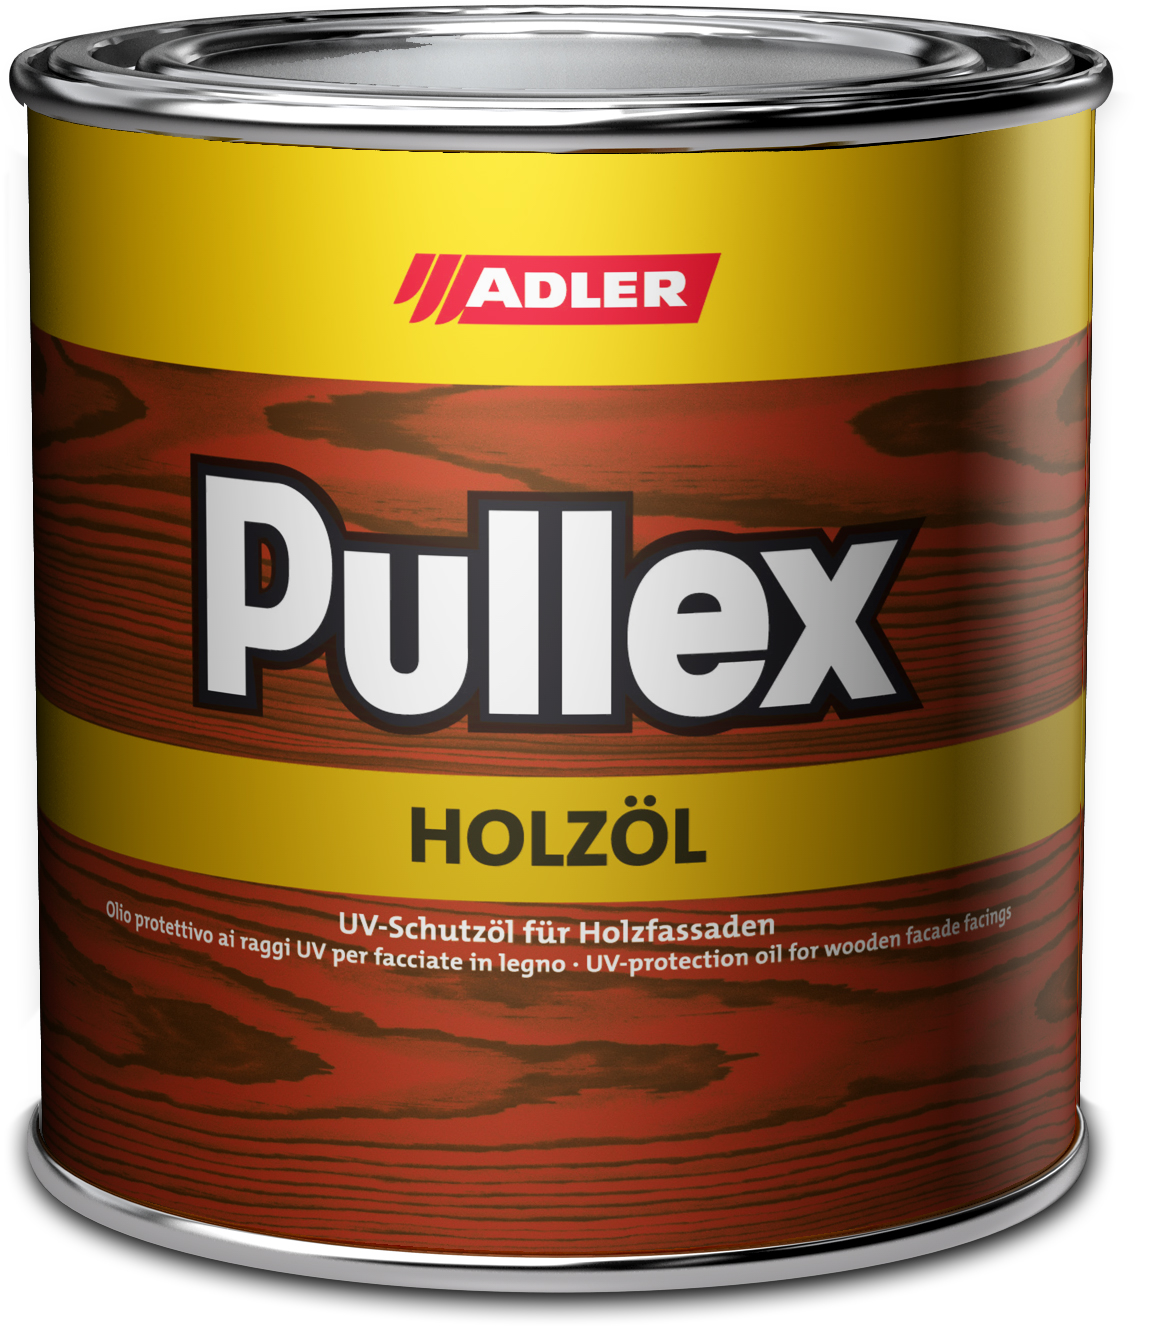 ADLER PULLEX HOLZÖL - UV ochranný olej na drevodomy a drevené obloženie ST 02/2 - frame 0,75 L